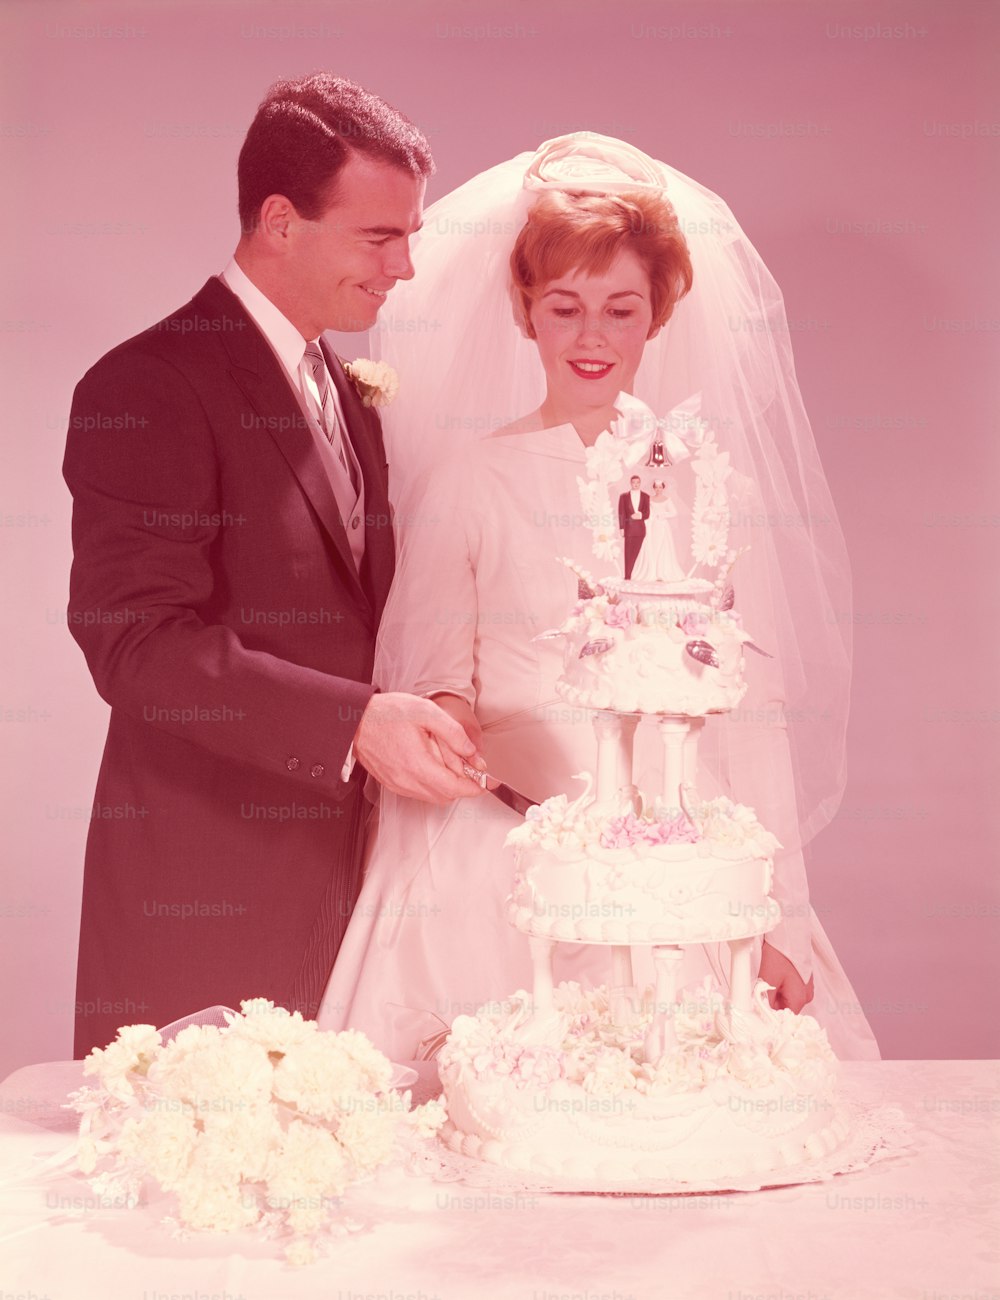 ESTADOS UNIDOS - CIRCA 1950s: Novia y novio cortando el pastel de bodas.